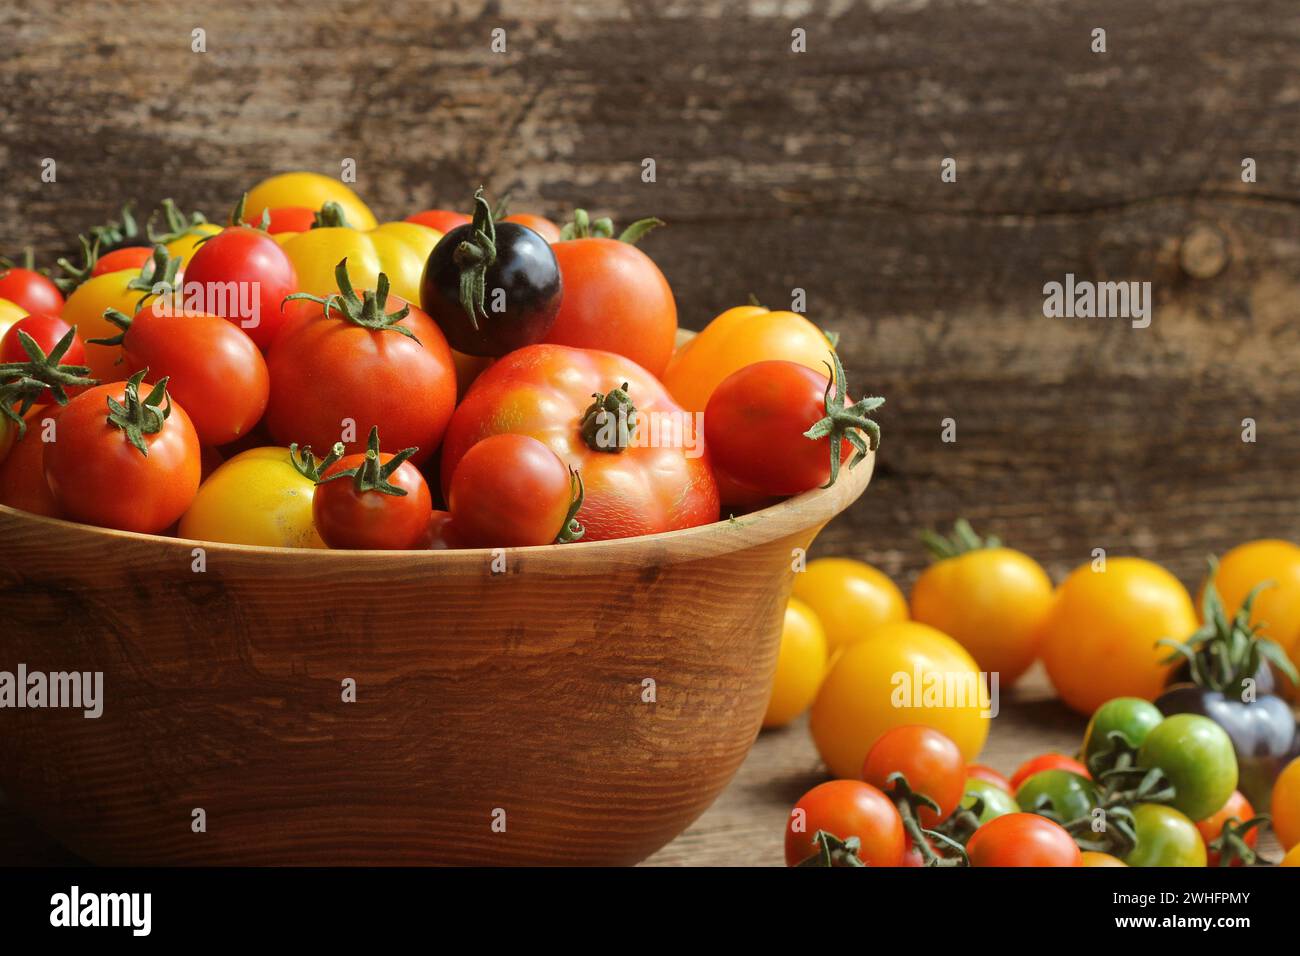 Hölzerne Schüssel mit frischem Wein gereift heirloom Tomaten aus Farmers Market Stockfoto